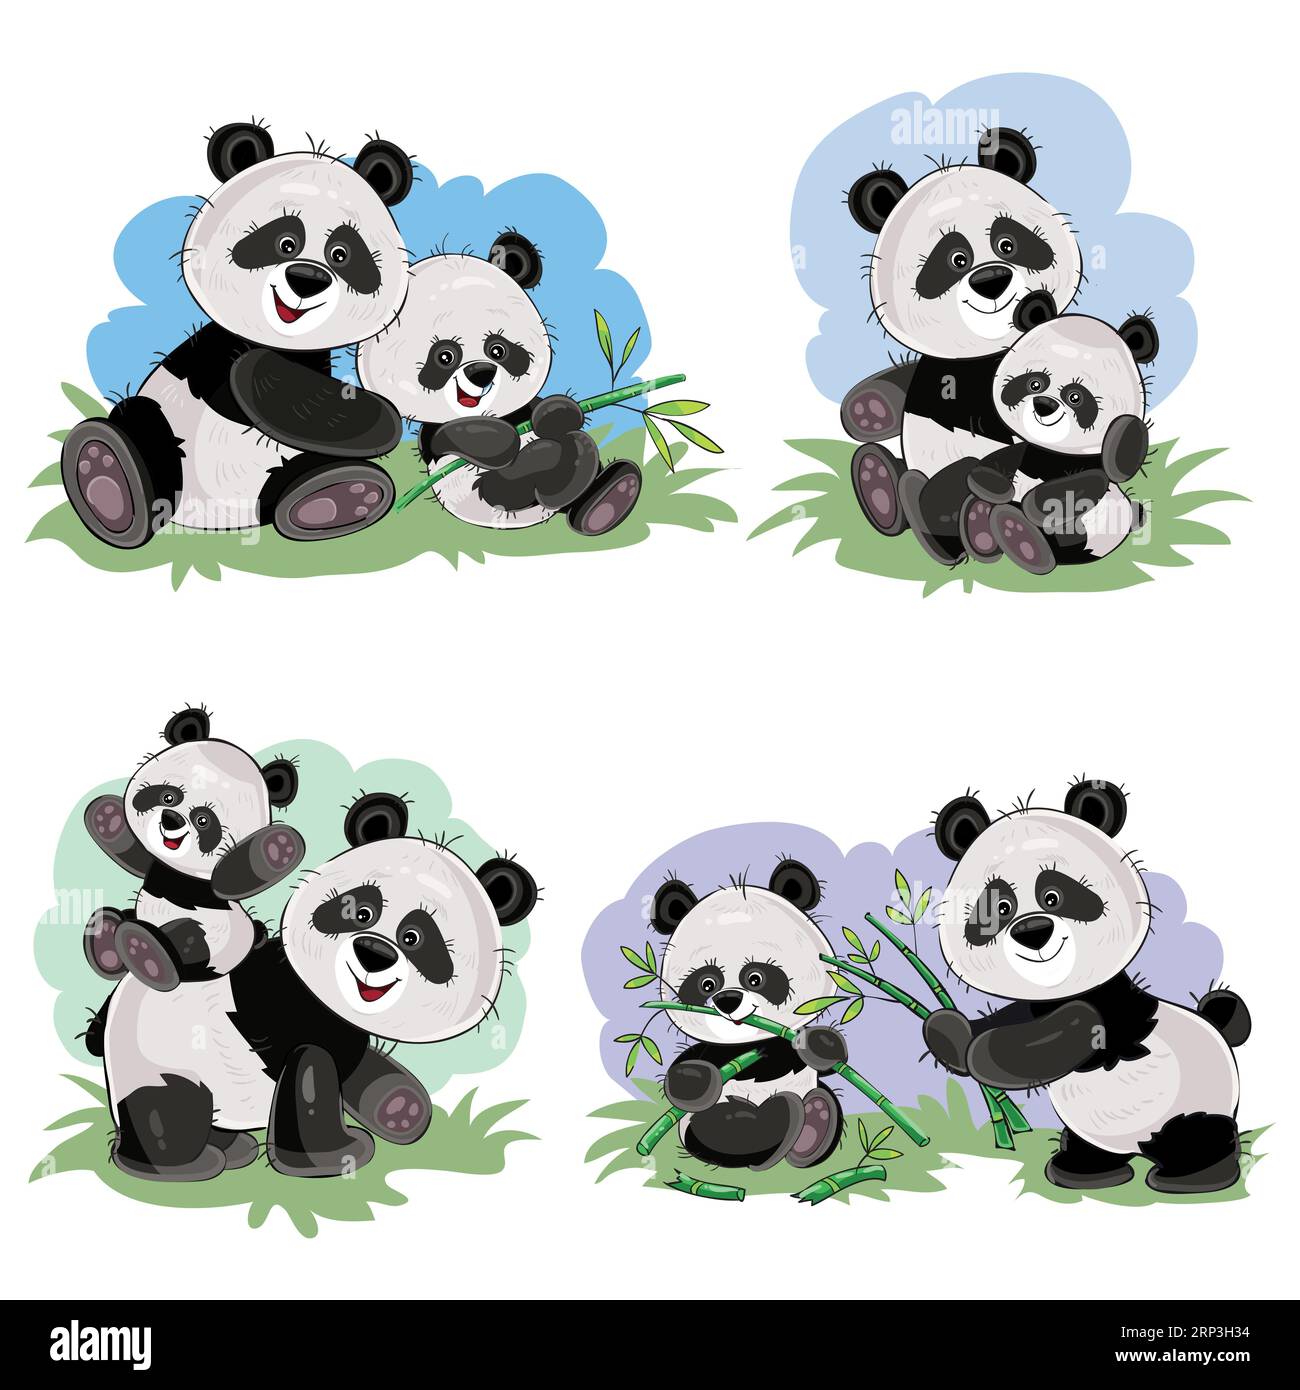 Simpatico orso panda e sua madre che giocano sull'erba, mangiano steli e foglie di bambù, illustrazioni di cartoni animati vettoriali. Animaletto selvaggio personaggi divertenti per ki Illustrazione Vettoriale